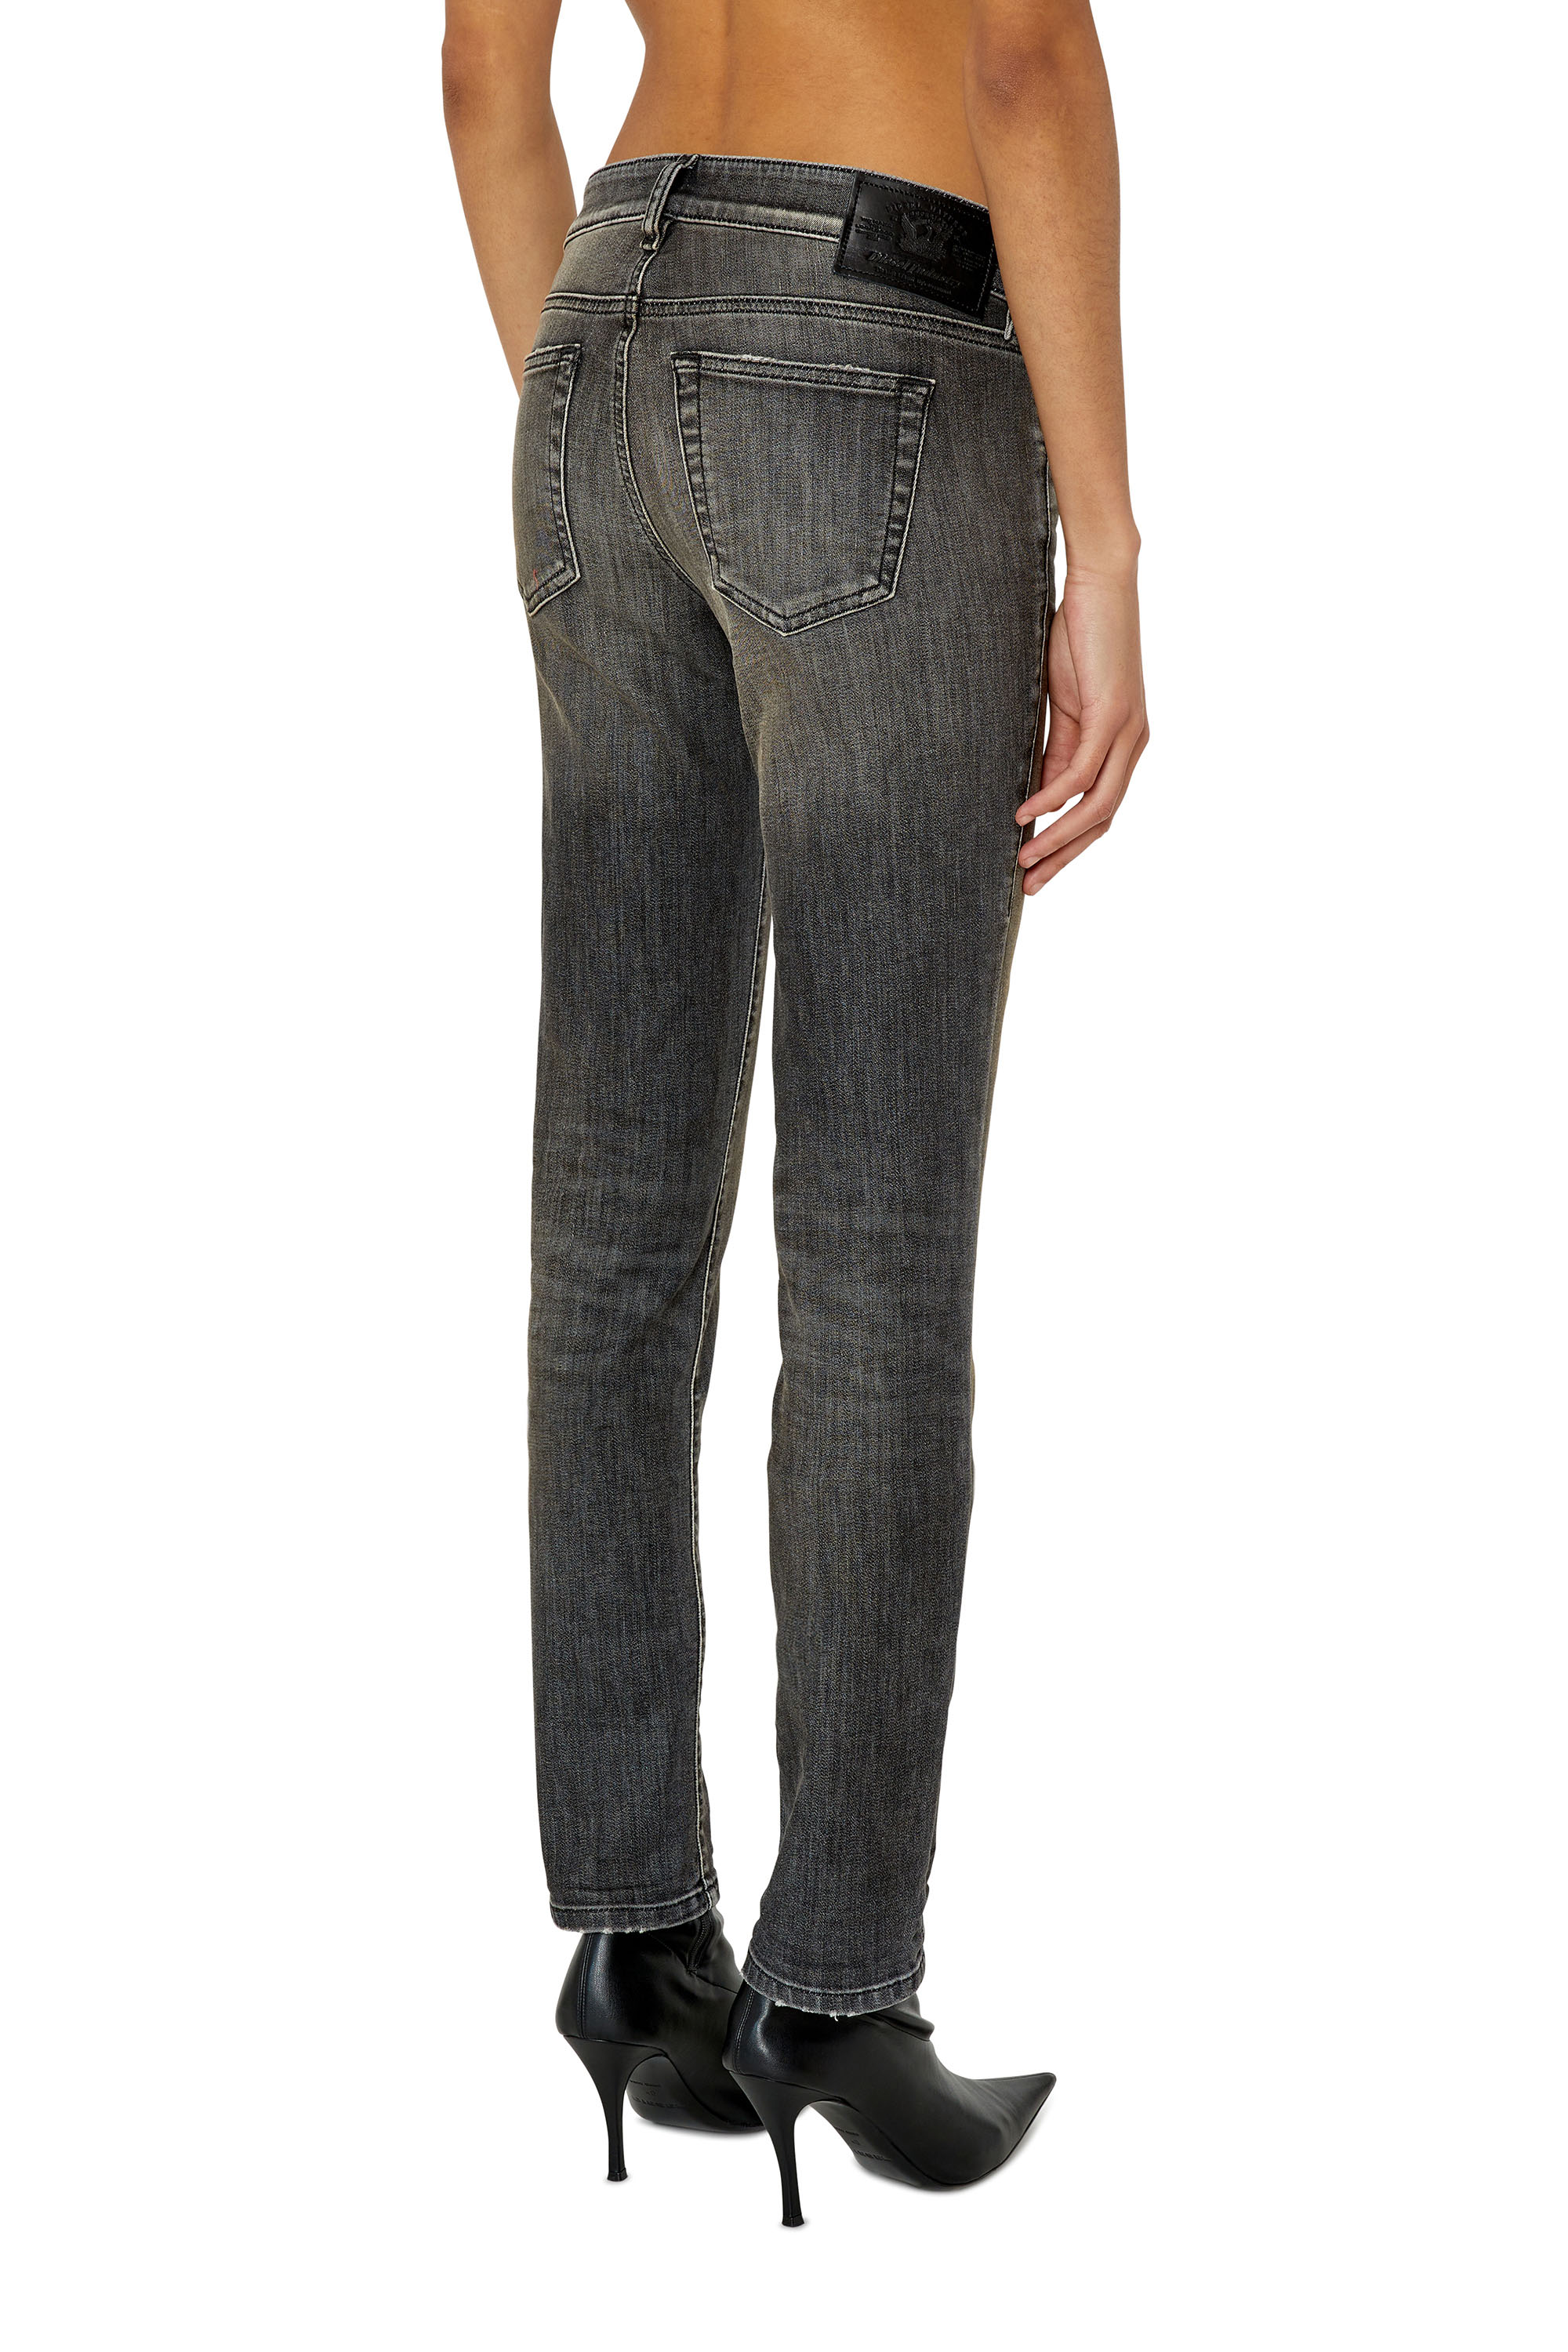 Diesel - Slim D-Ollies JoggJeans® 09F01, Black/Dark grey - Image 2